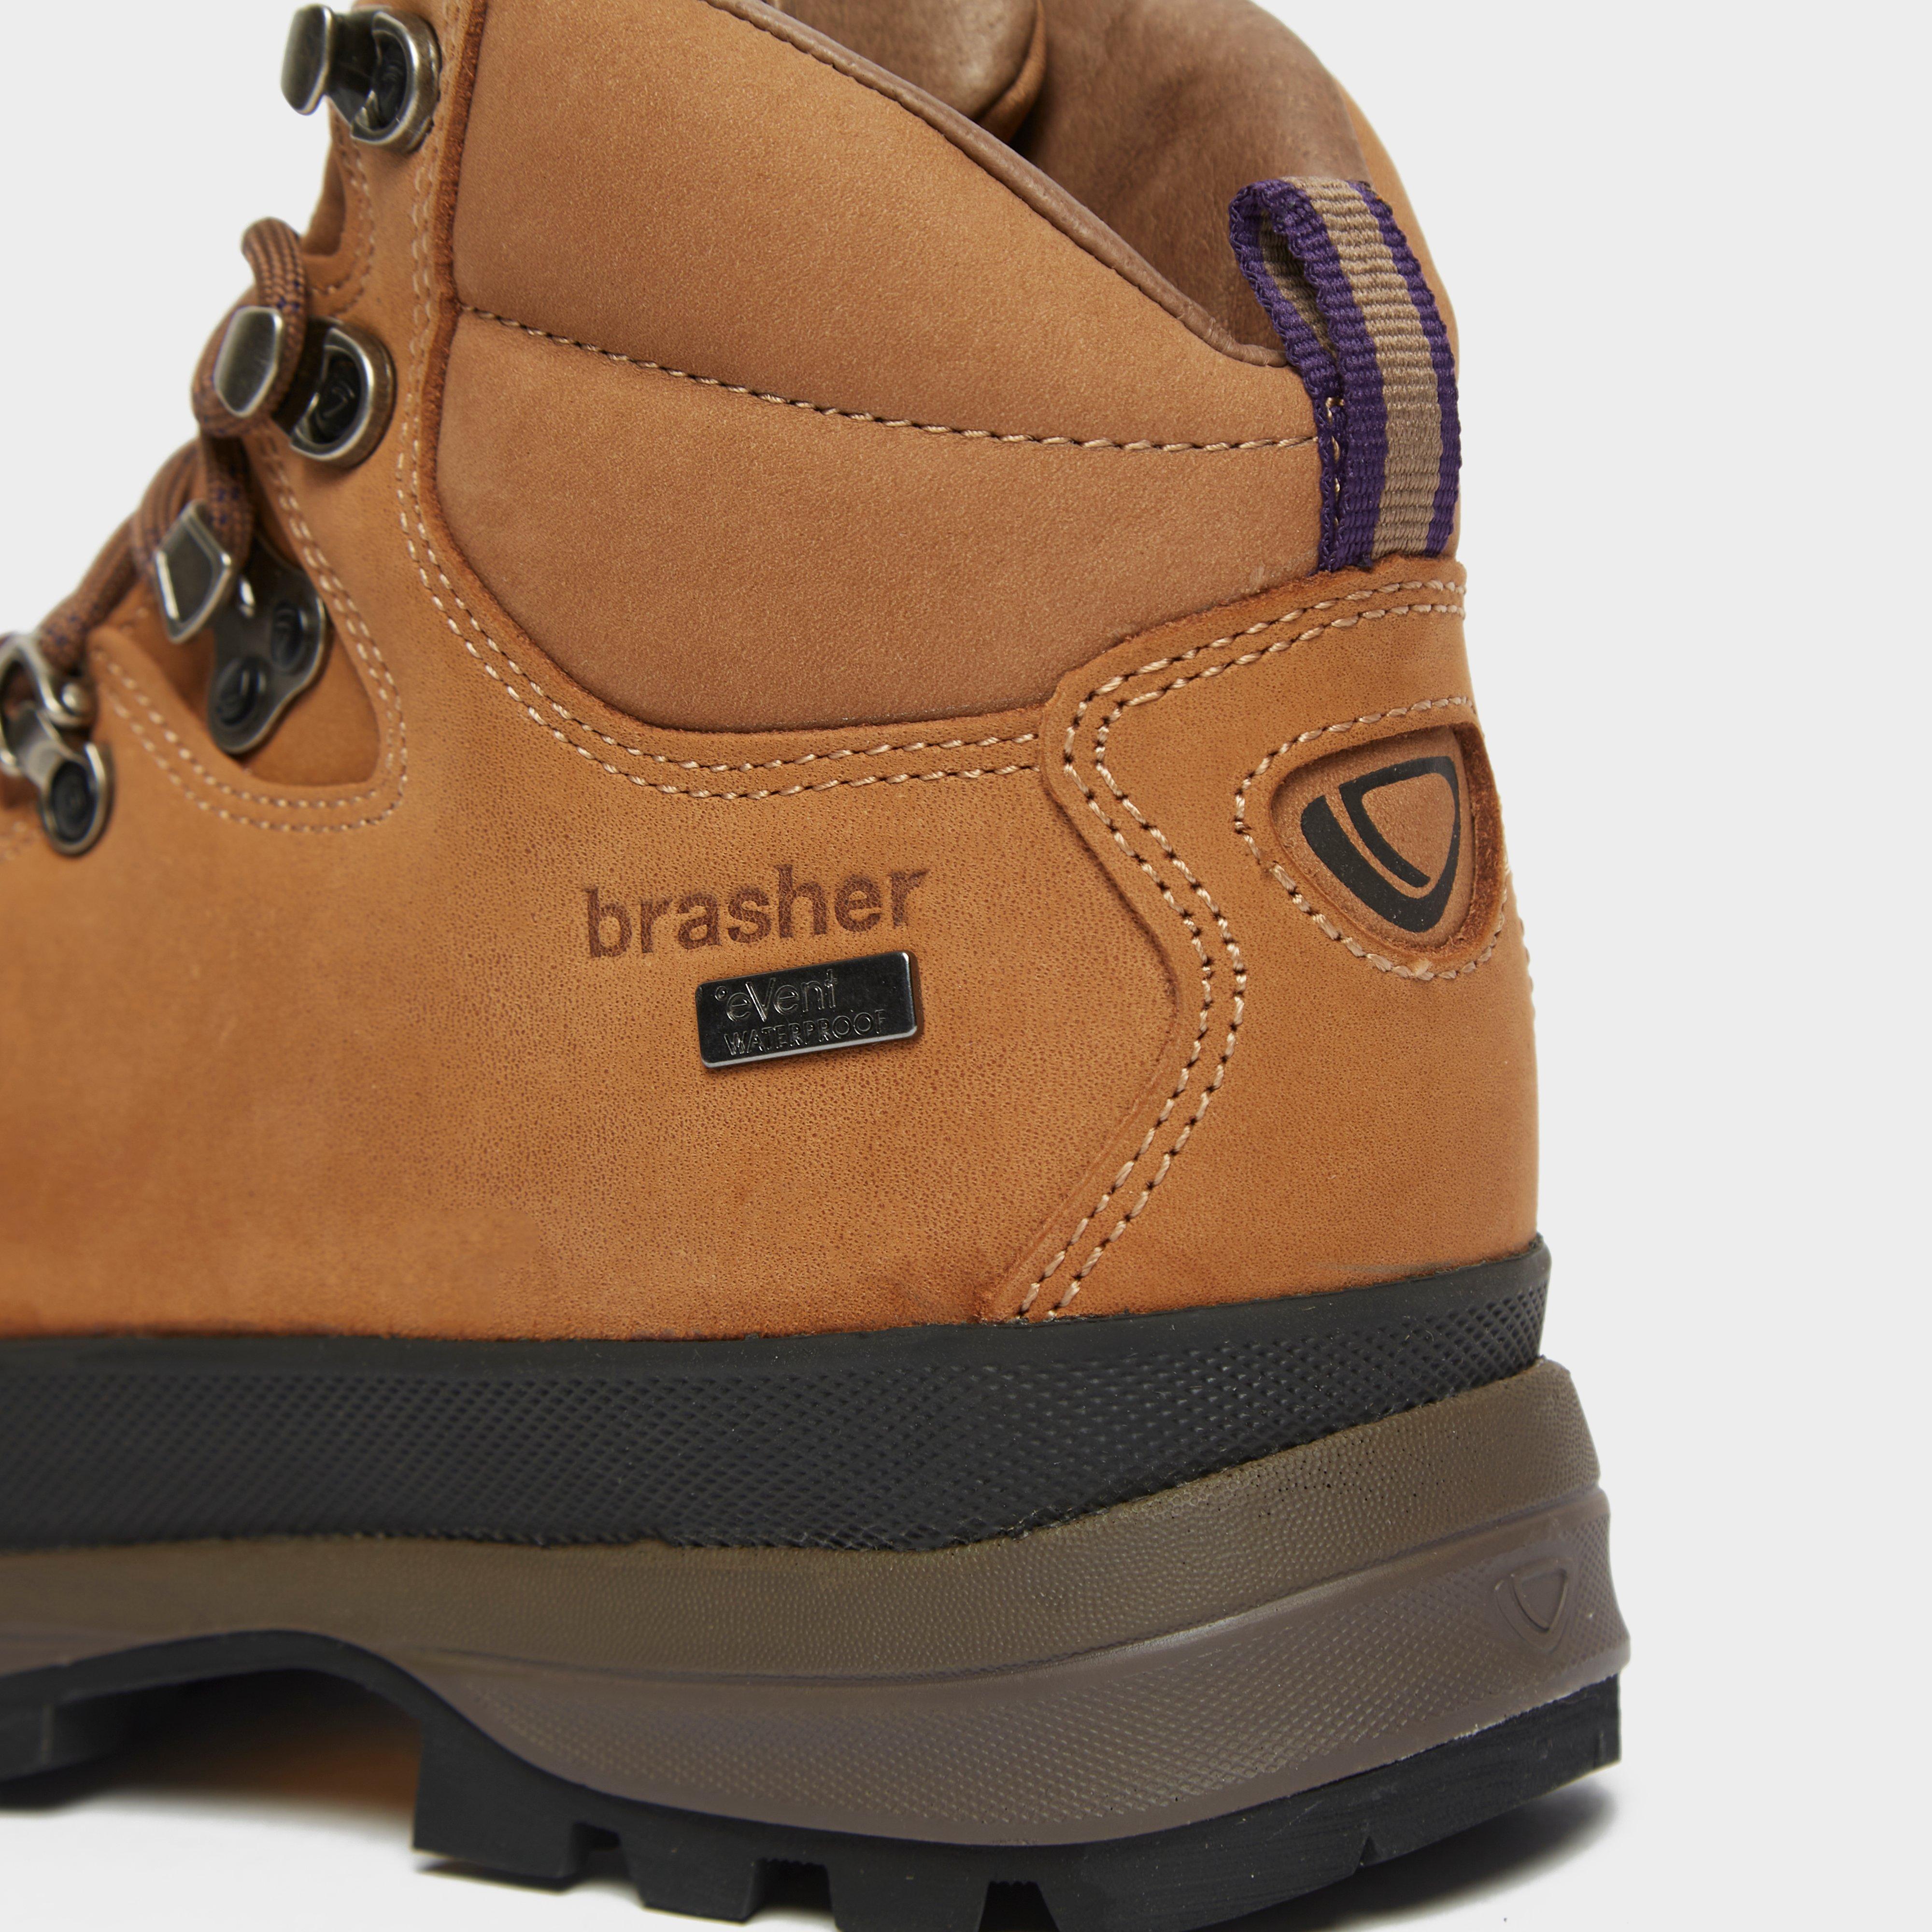 brasher women's walking boots